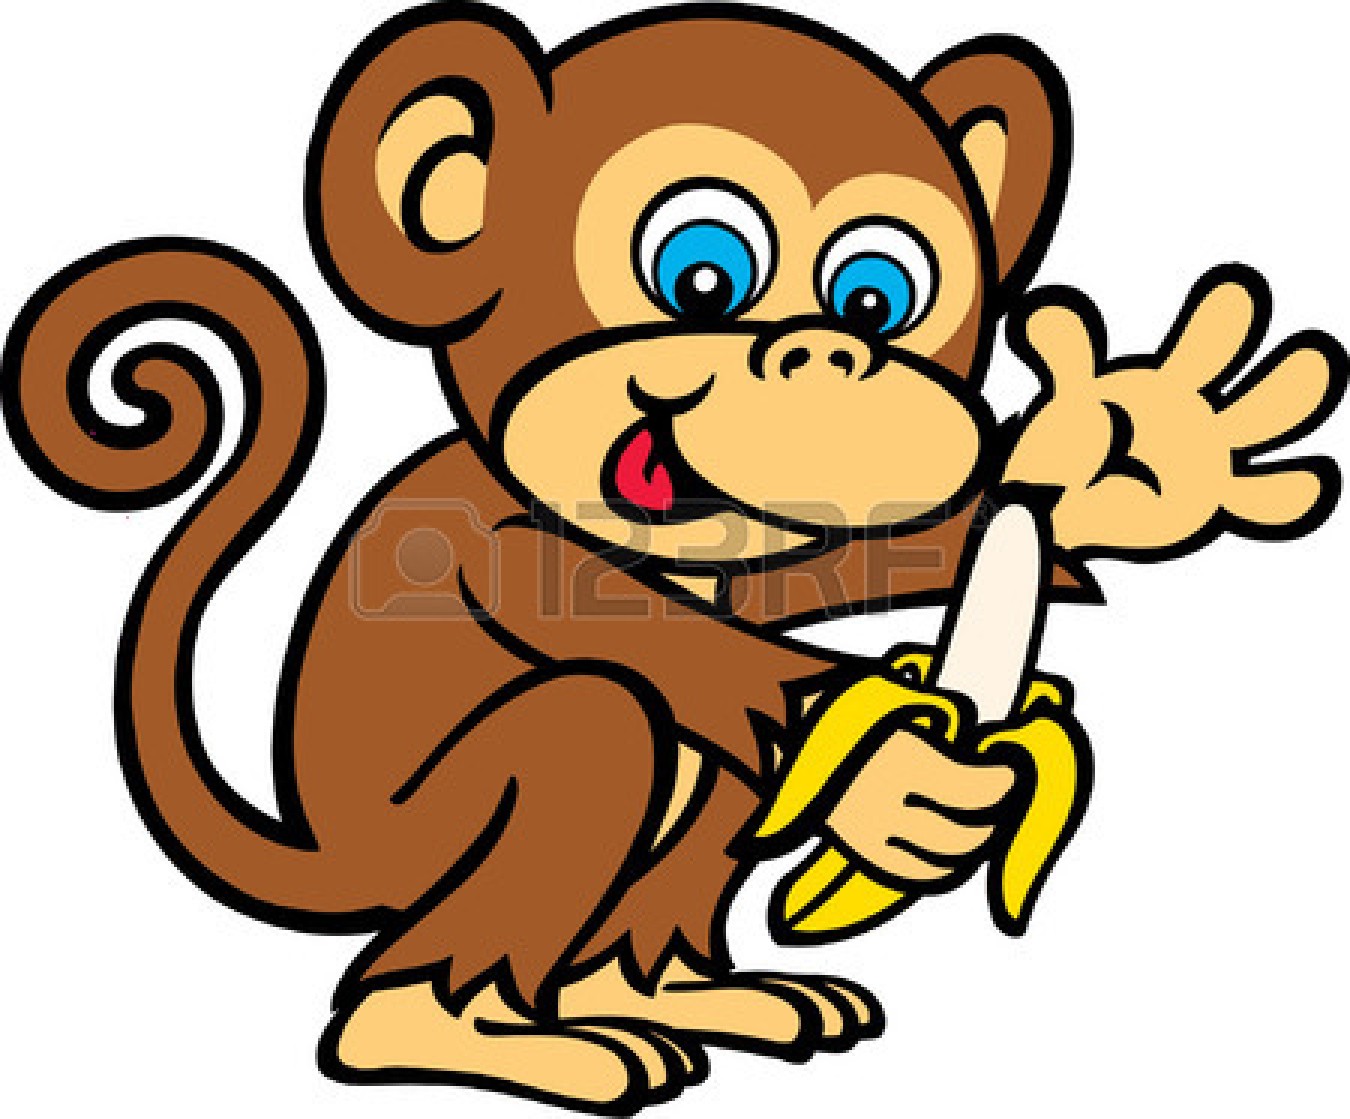 Monkey banana cartoon.